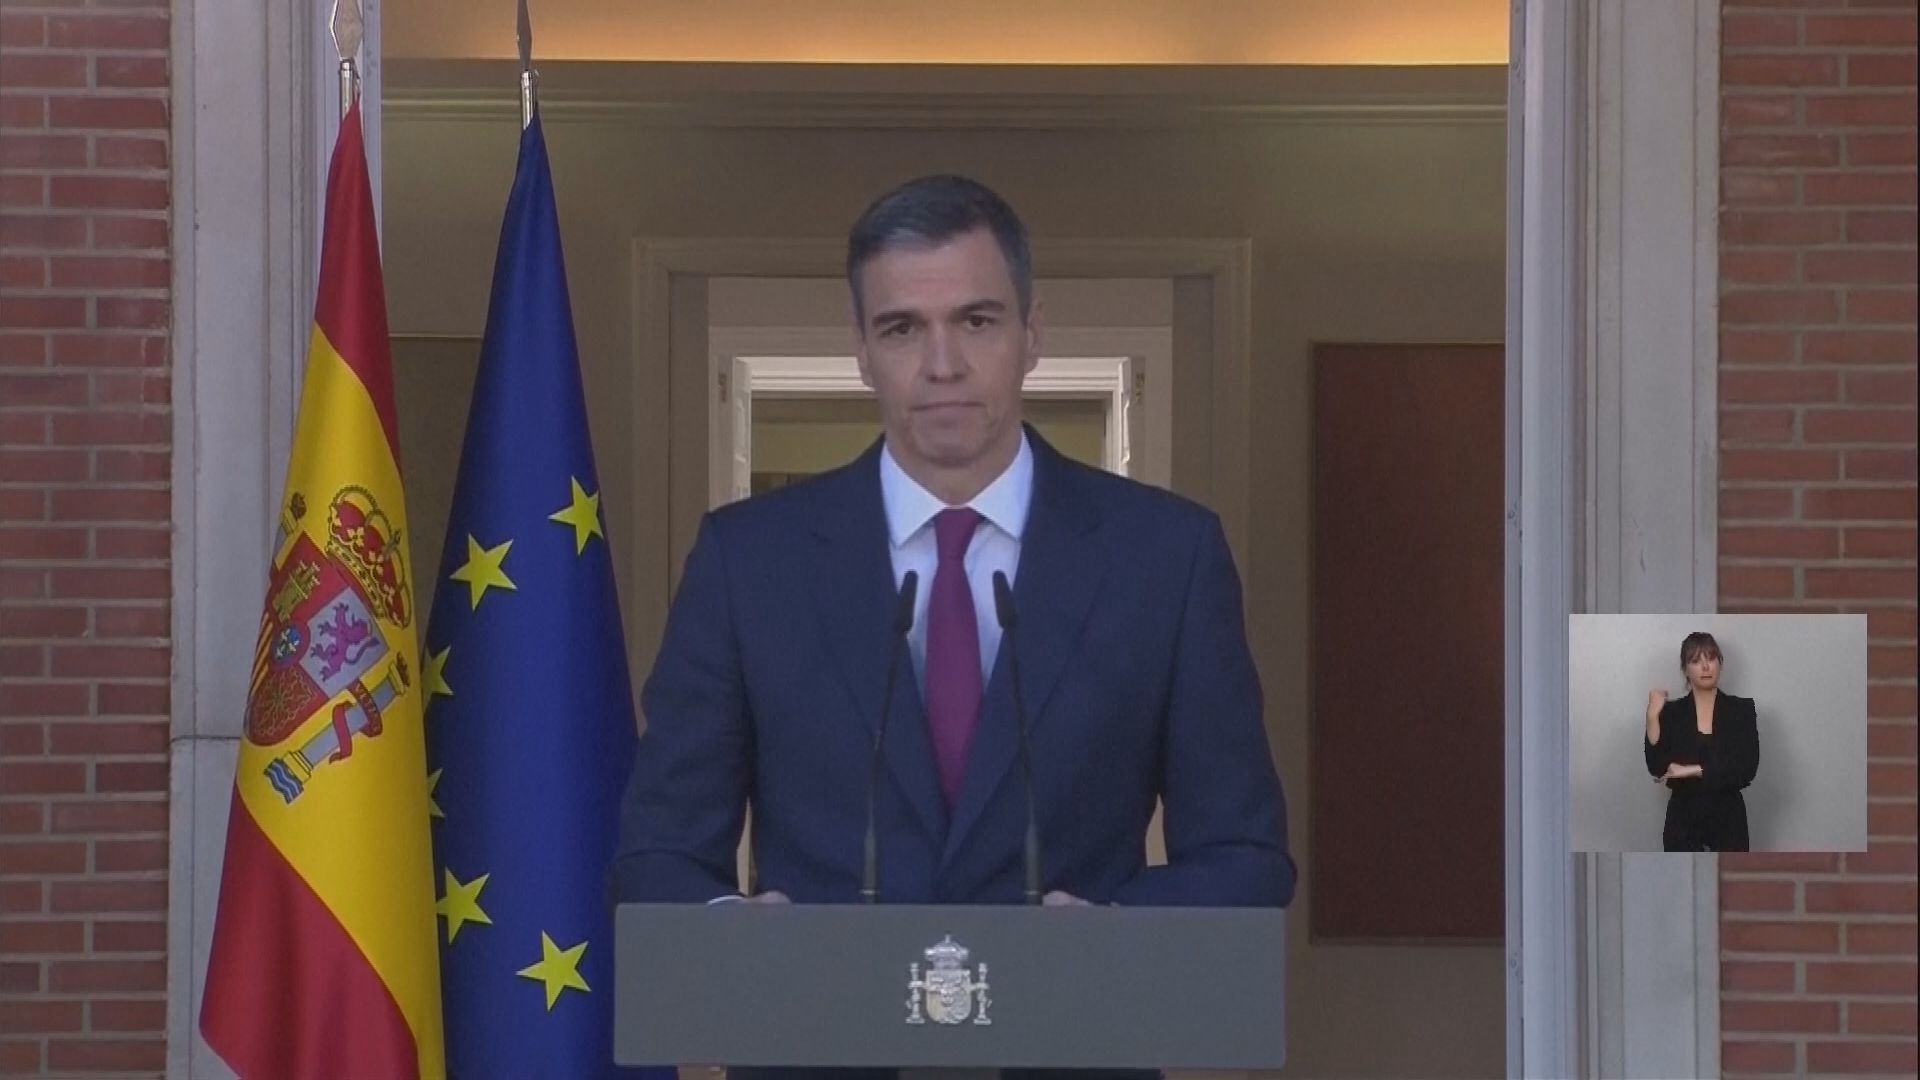 スペイン首相続投表明　妻の汚職疑惑で予備的捜査開始で検討